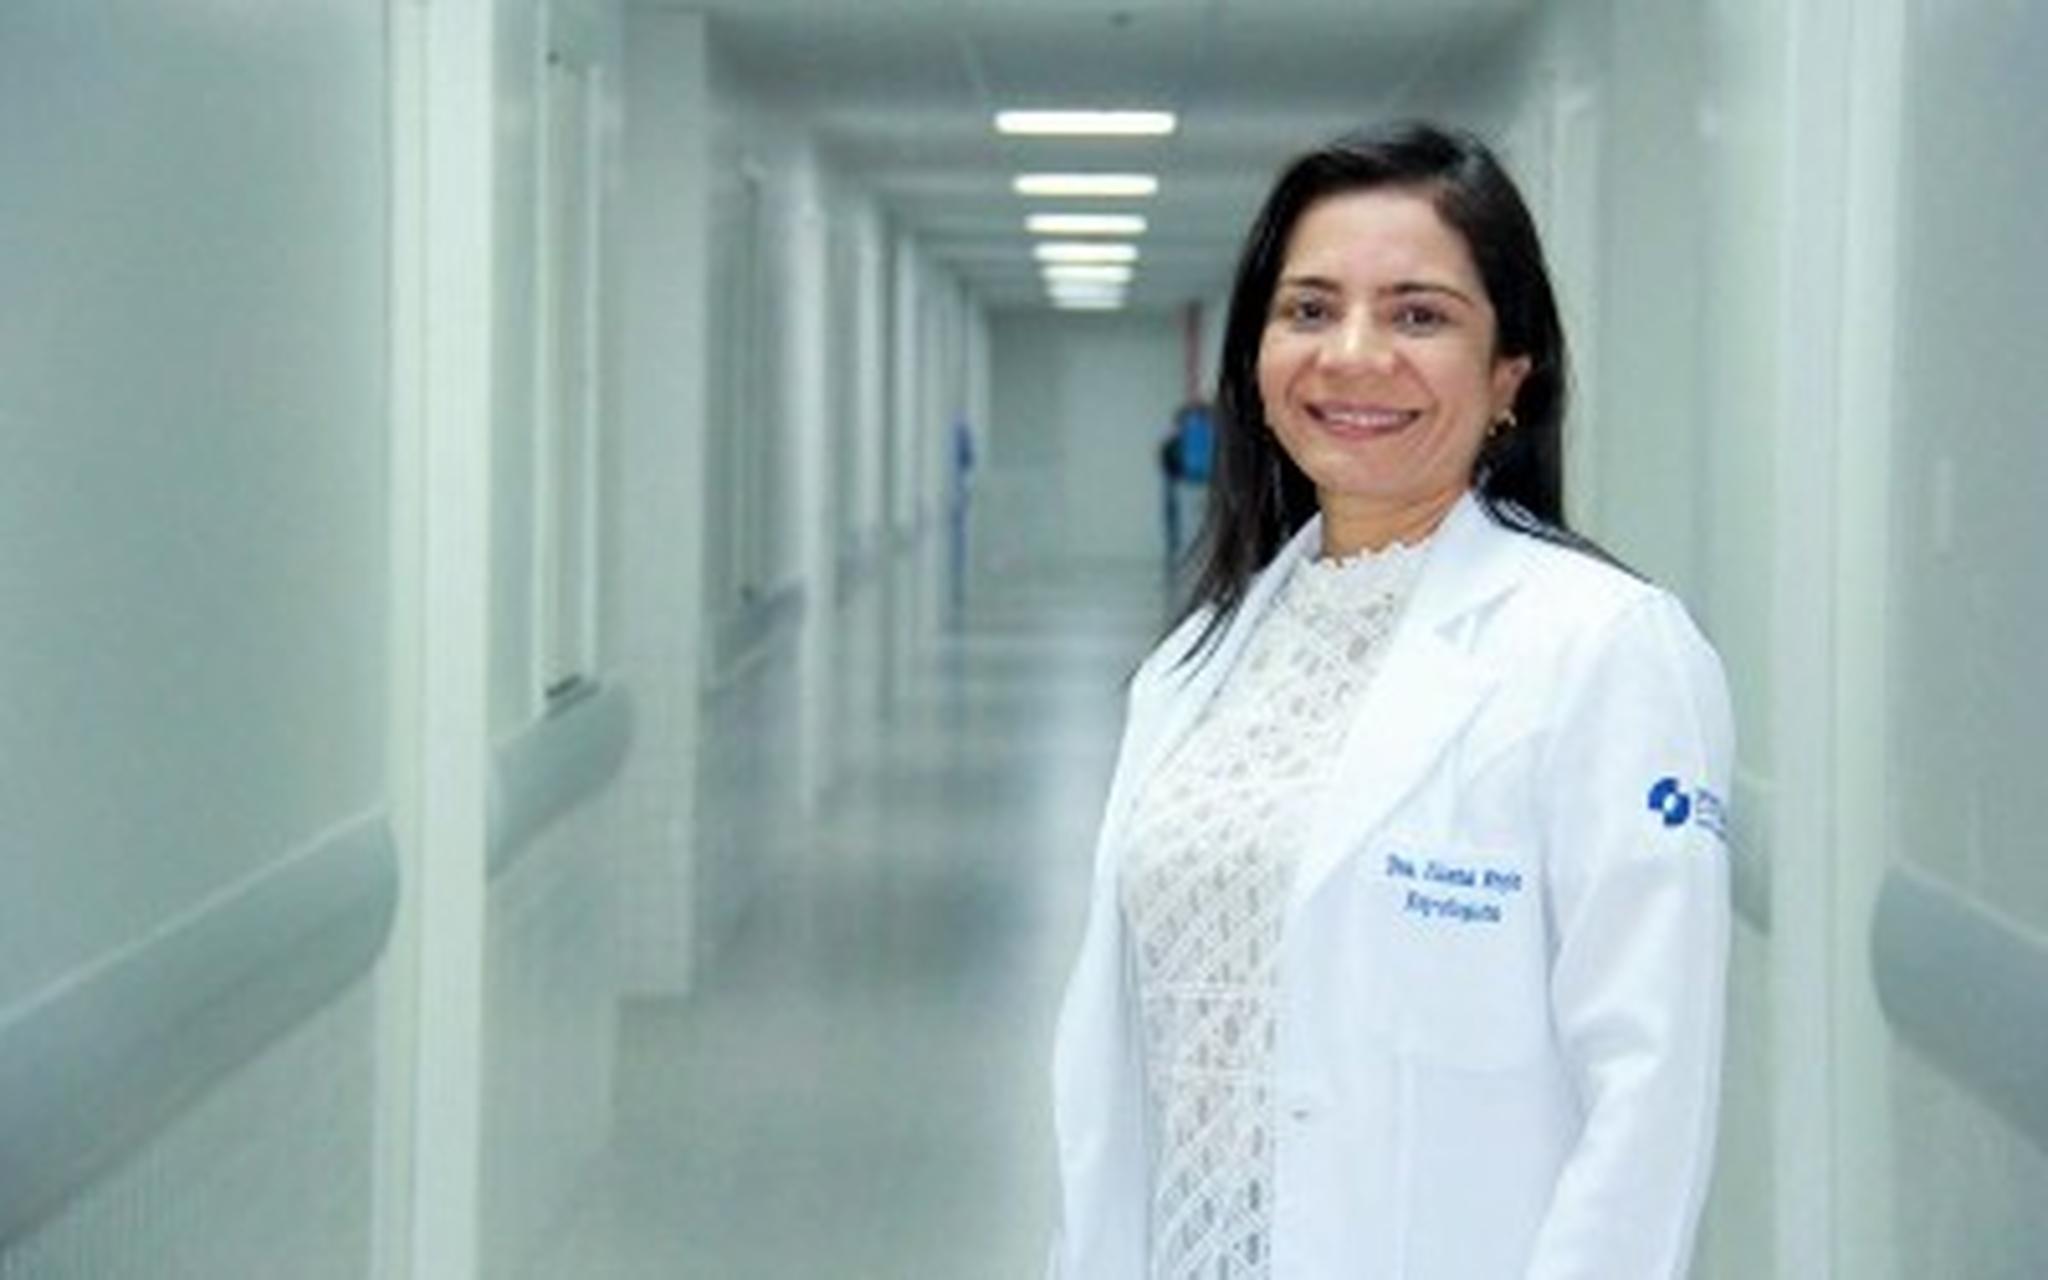 A médica Eliana Barbosa, coordenadora da Central de Transplantes do Ceará, está entre os homenageados na 19ª Edição da campanha realizada pela Fundação Edson Queiroz